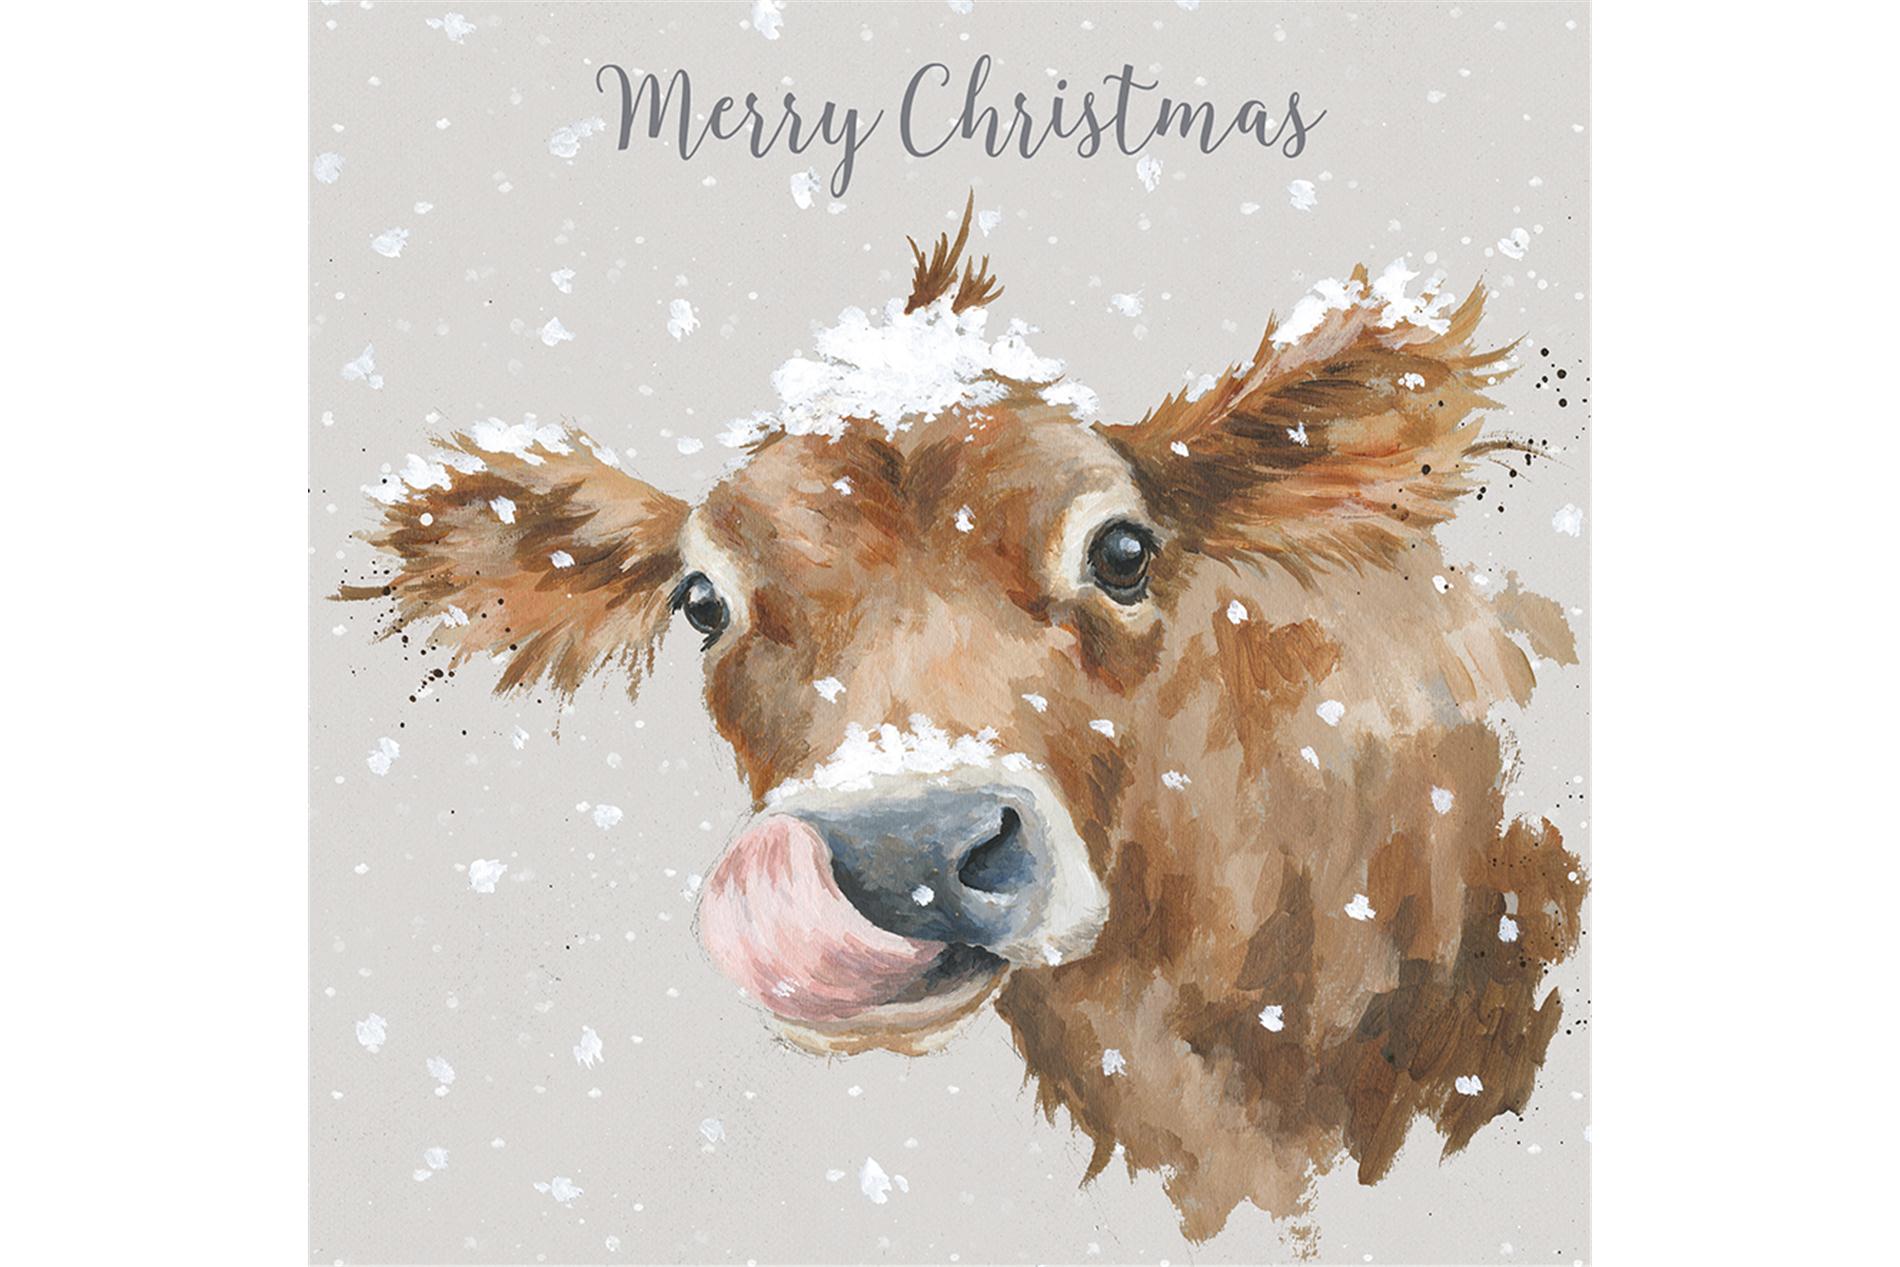 Wrendale Weihnachtskartenbox Merry Christmas, Motiv Kuh, 8 Karten mit Umschlag und Text, 15,5x15,5 cm